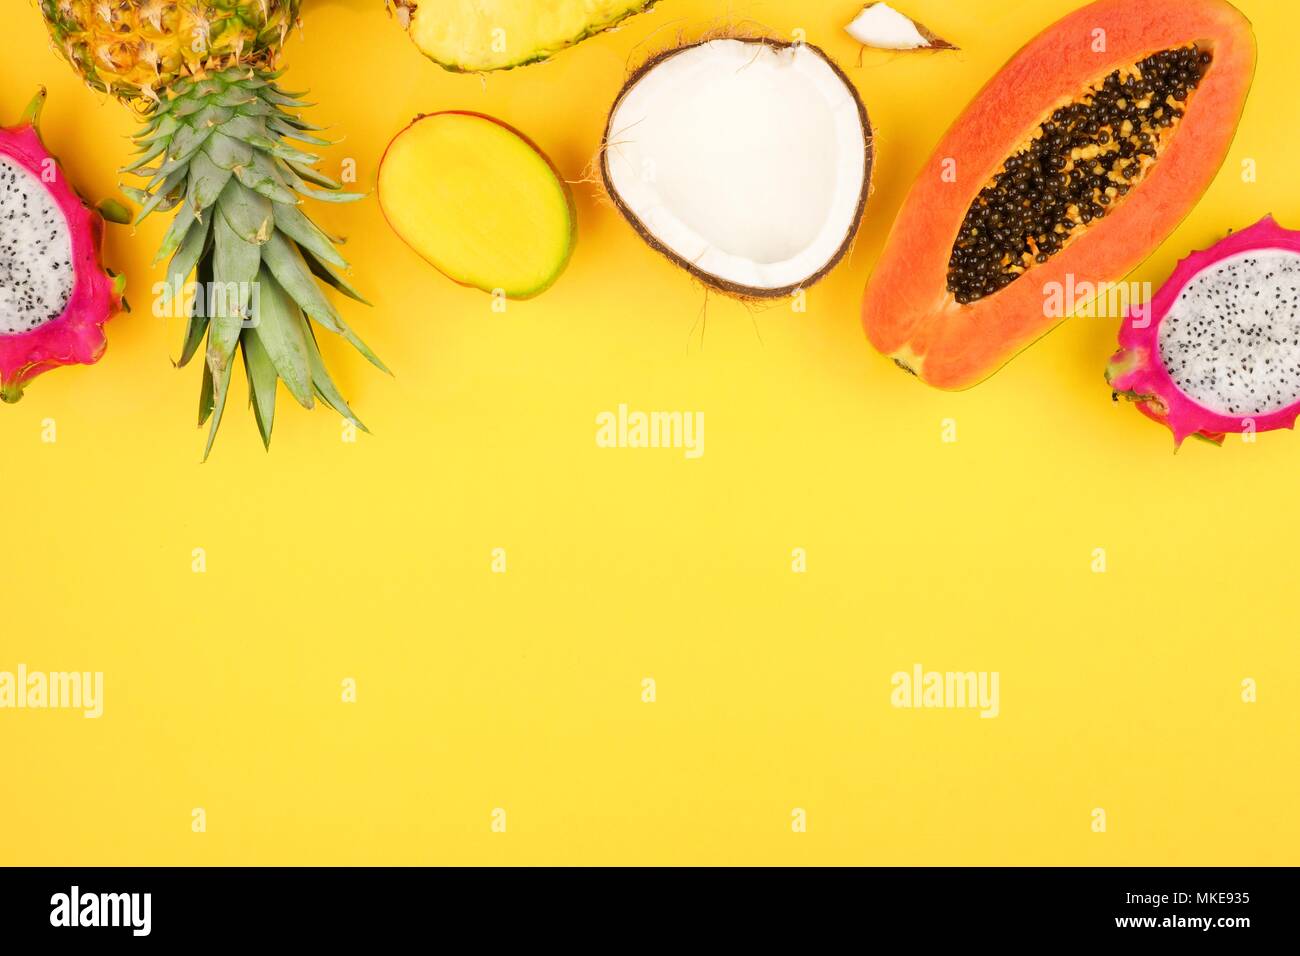 Tropische Früchte oberer Rand mit Ananas, Drachenfrucht, Papaya, Kokos und Mango auf einem hellen gelben Hintergrund Stockfoto